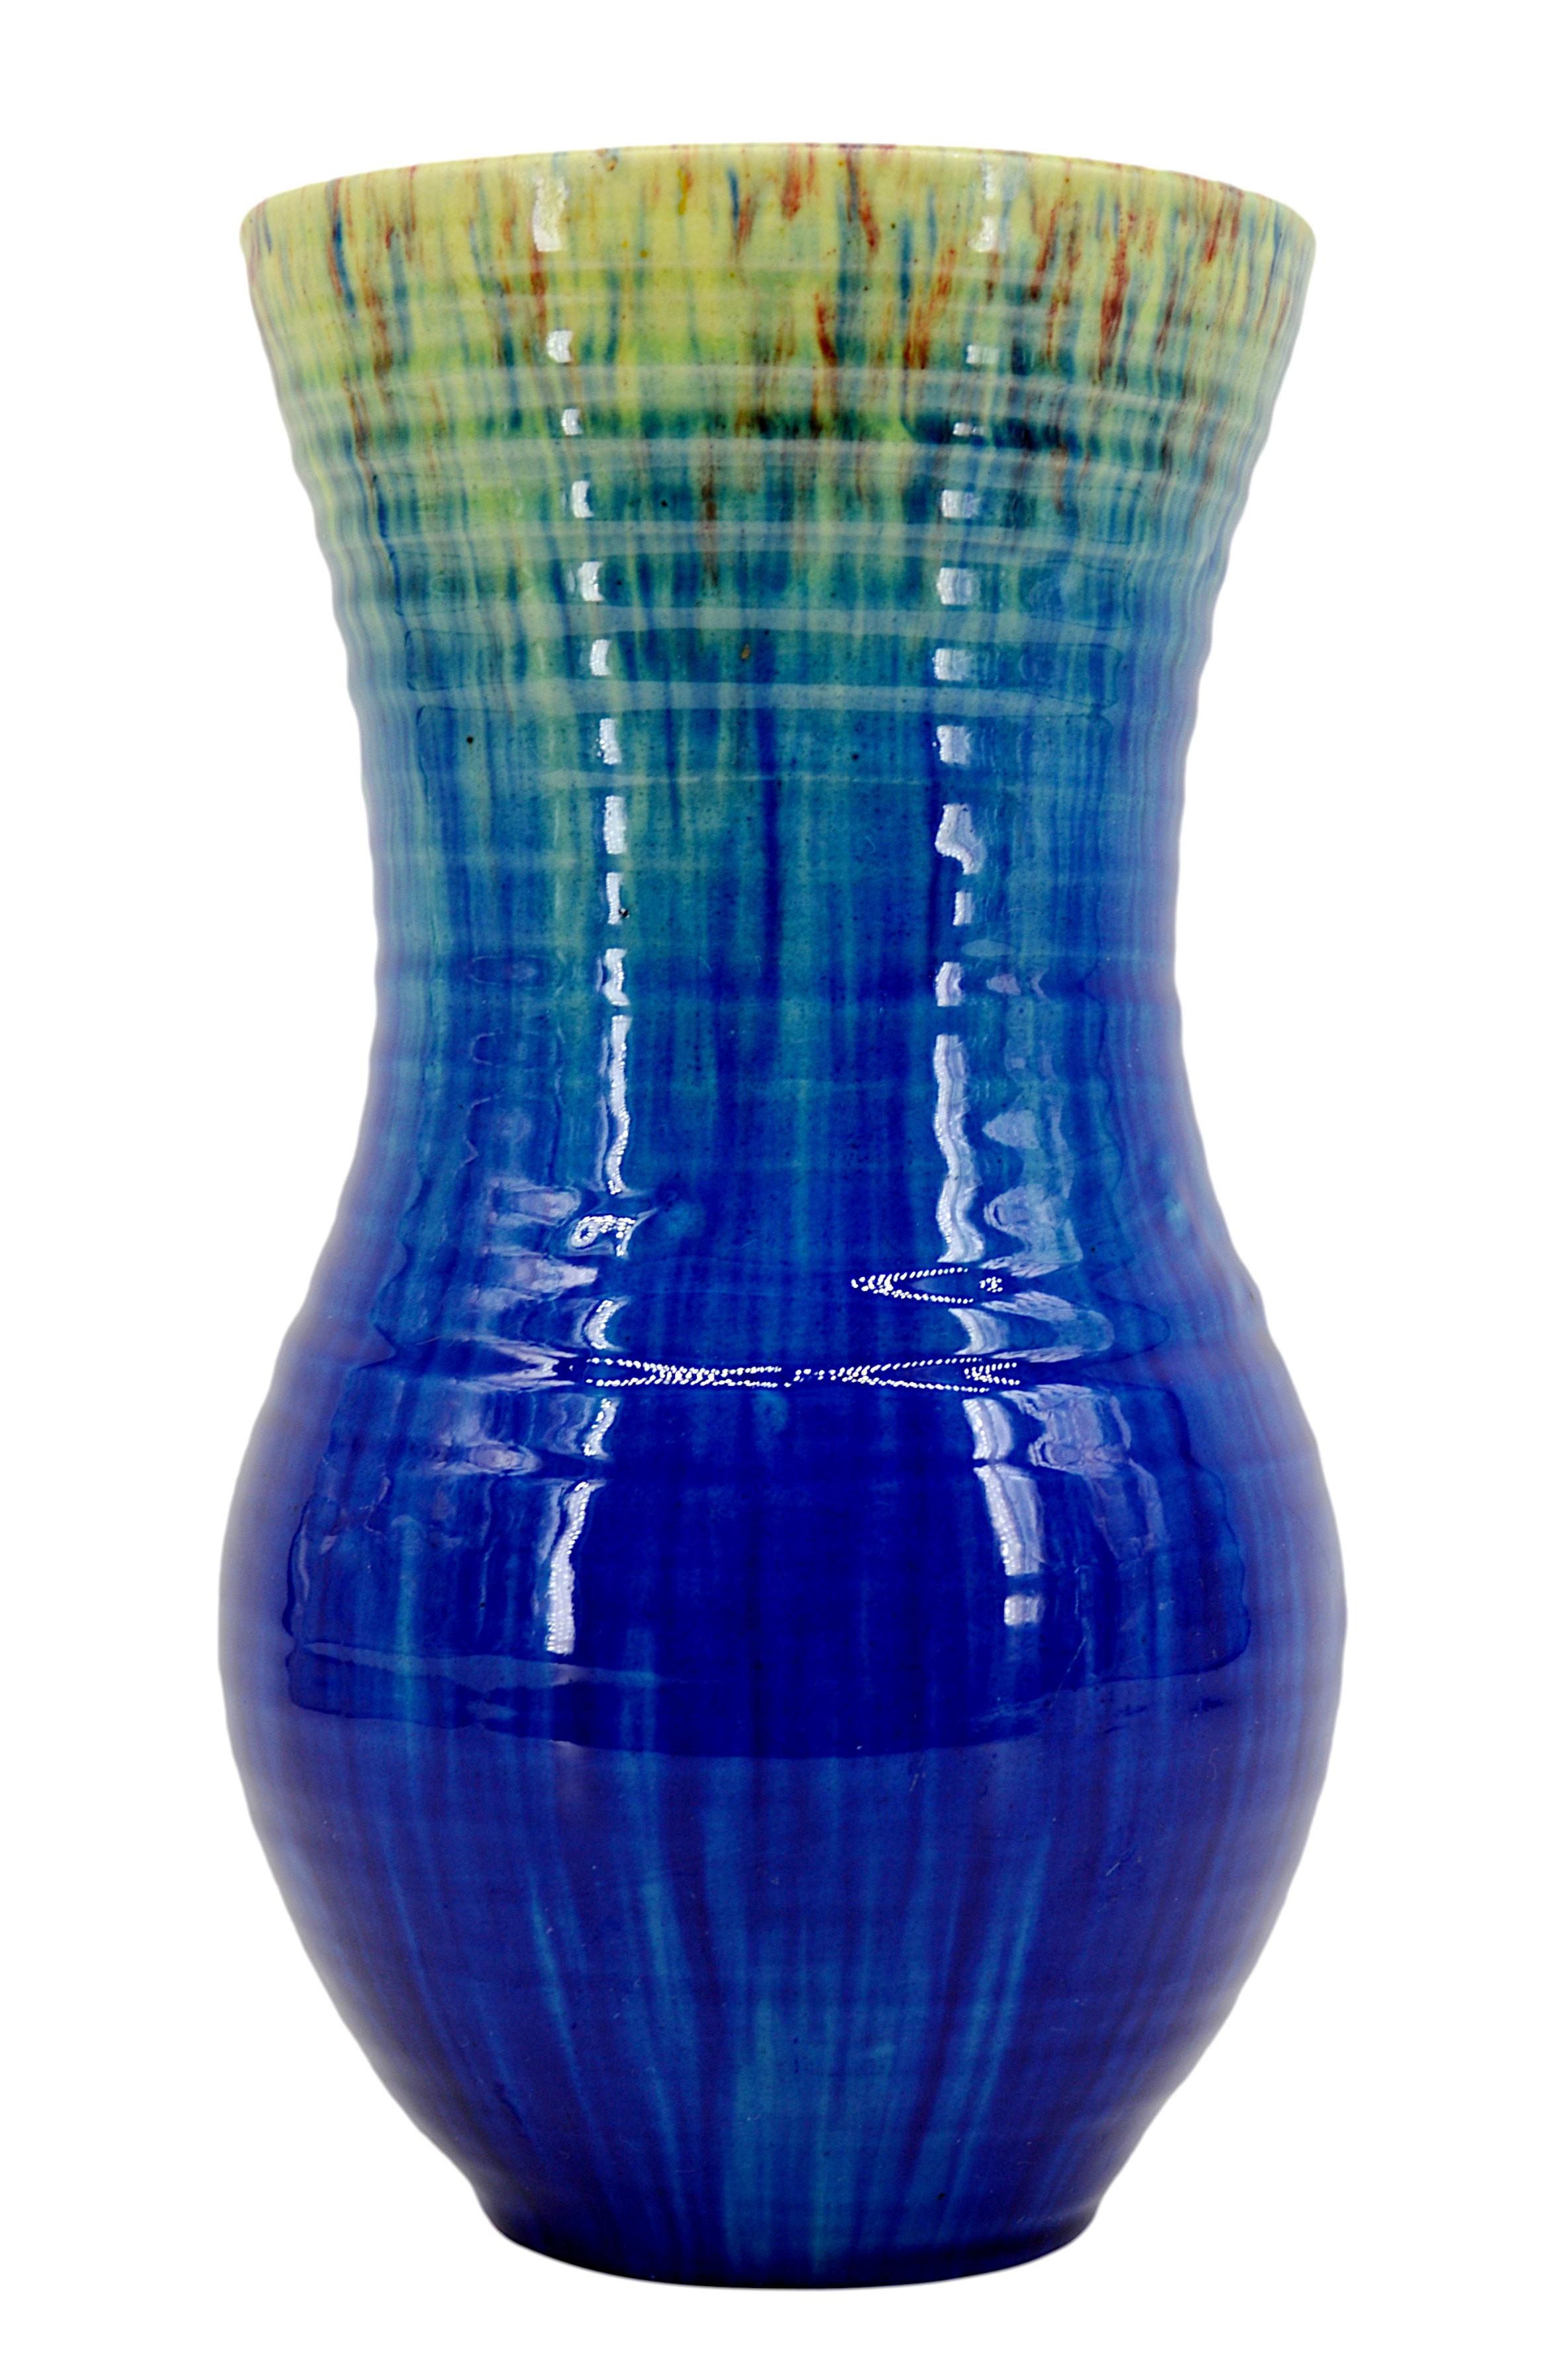 Vase français du milieu du siècle par Accolay, France, années 1950. Vase bleu, jaune (qui devient vert par endroits) et marron. 
Dimensions : hauteur : 28,3 cm (11,15